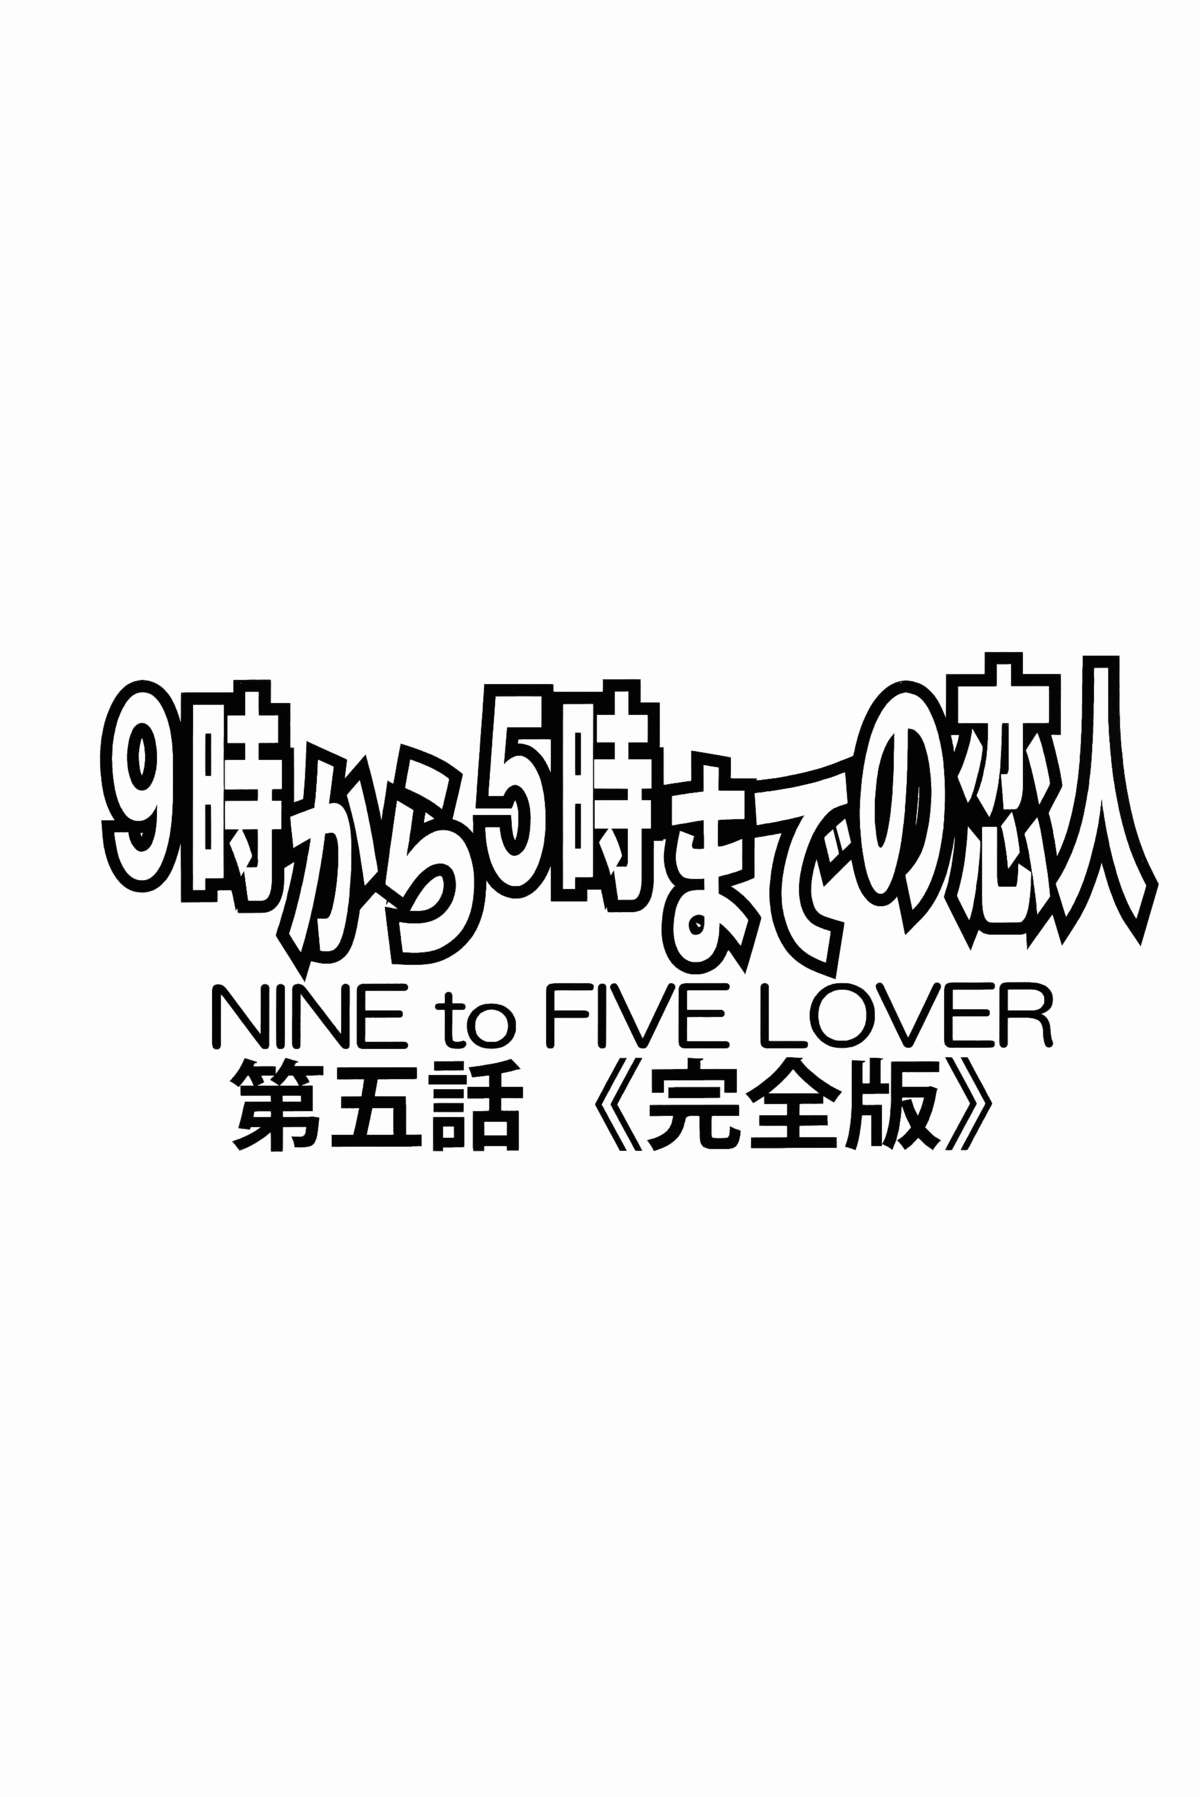 9-Ji Kara 5-ji Made no Koibito Dai Go wa Kanzenban-NINE to FIVE LOVER